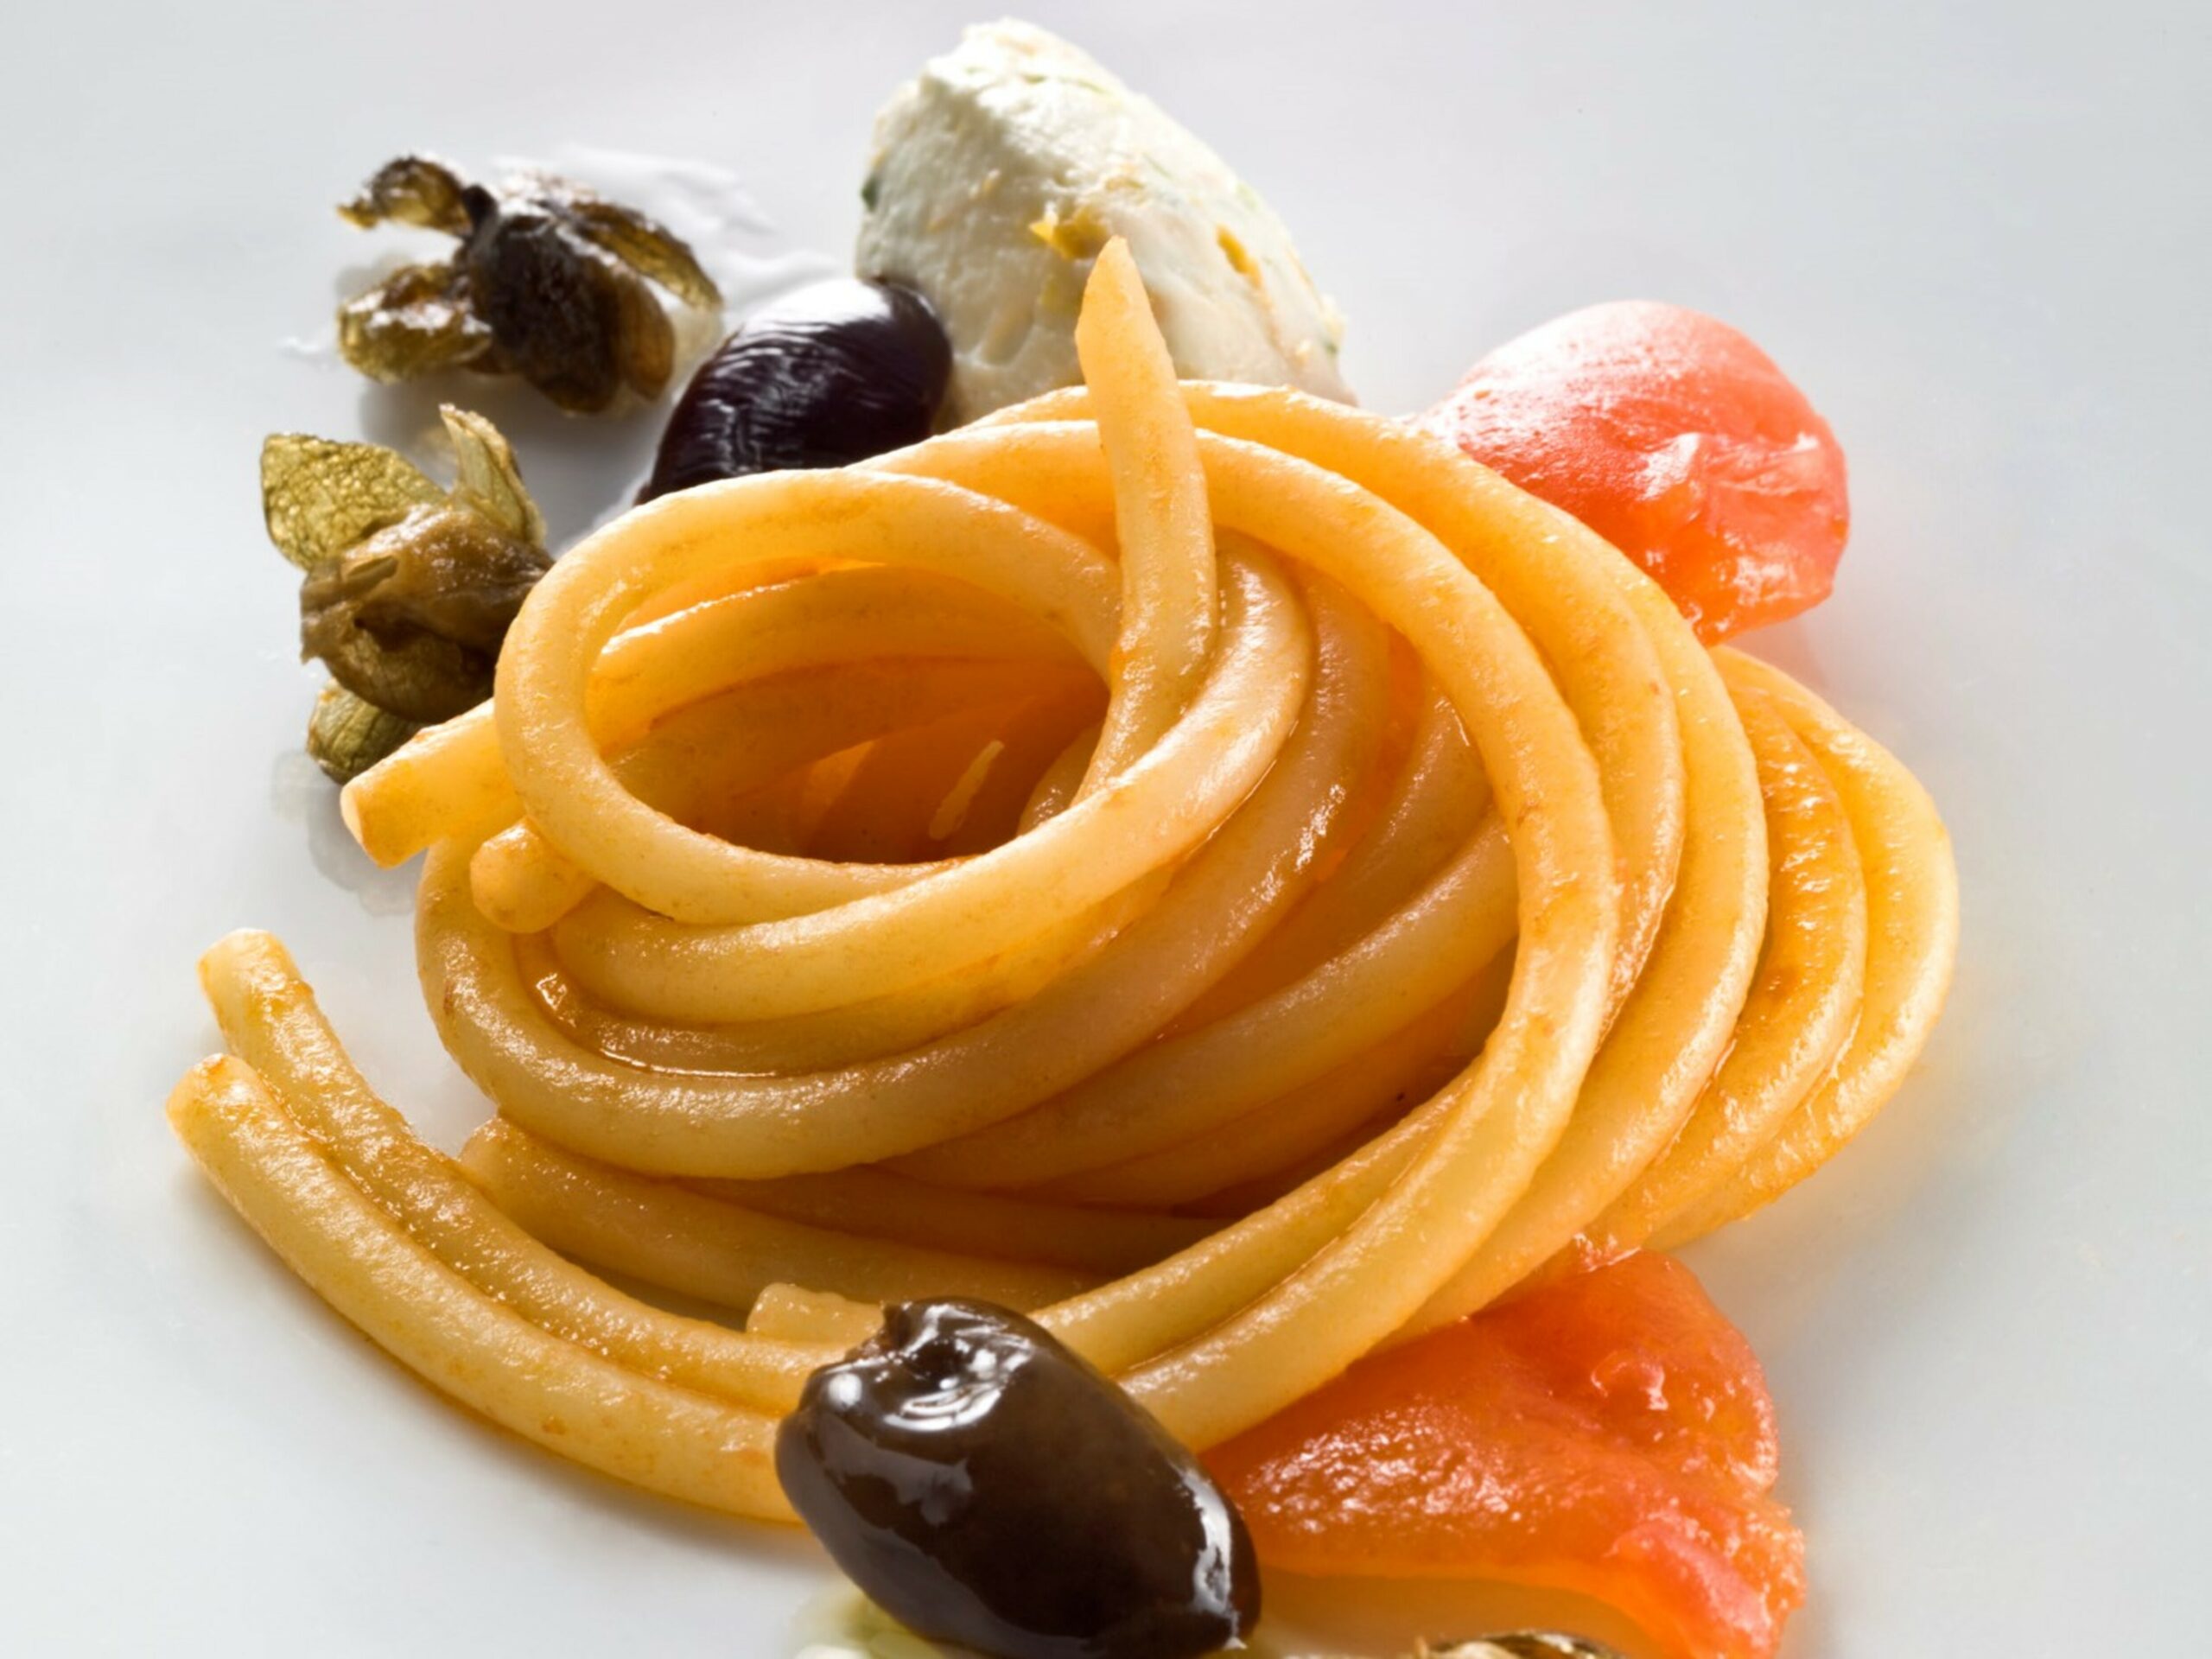 Bucatini Piccoli n°14 pomodoro, olive, capperi e caprino al lime